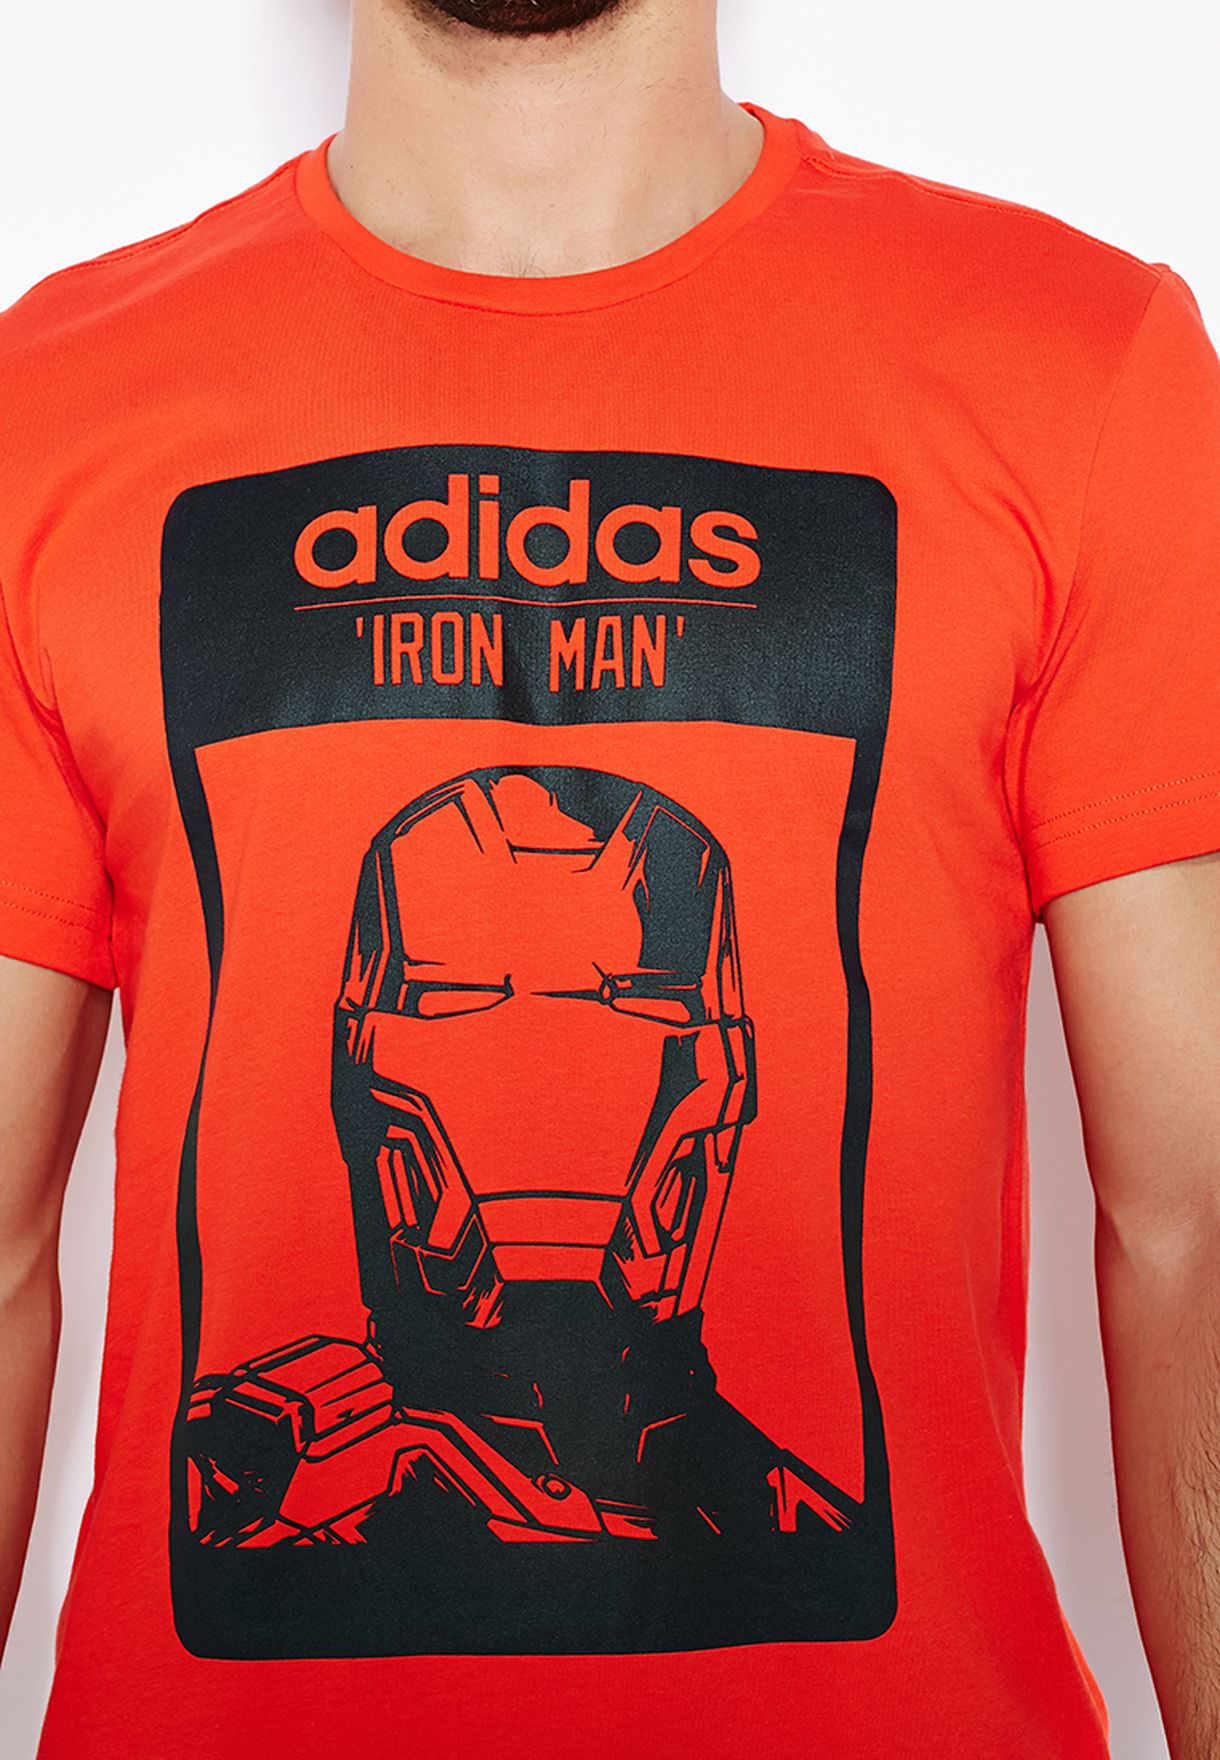 adidas iron man shirt